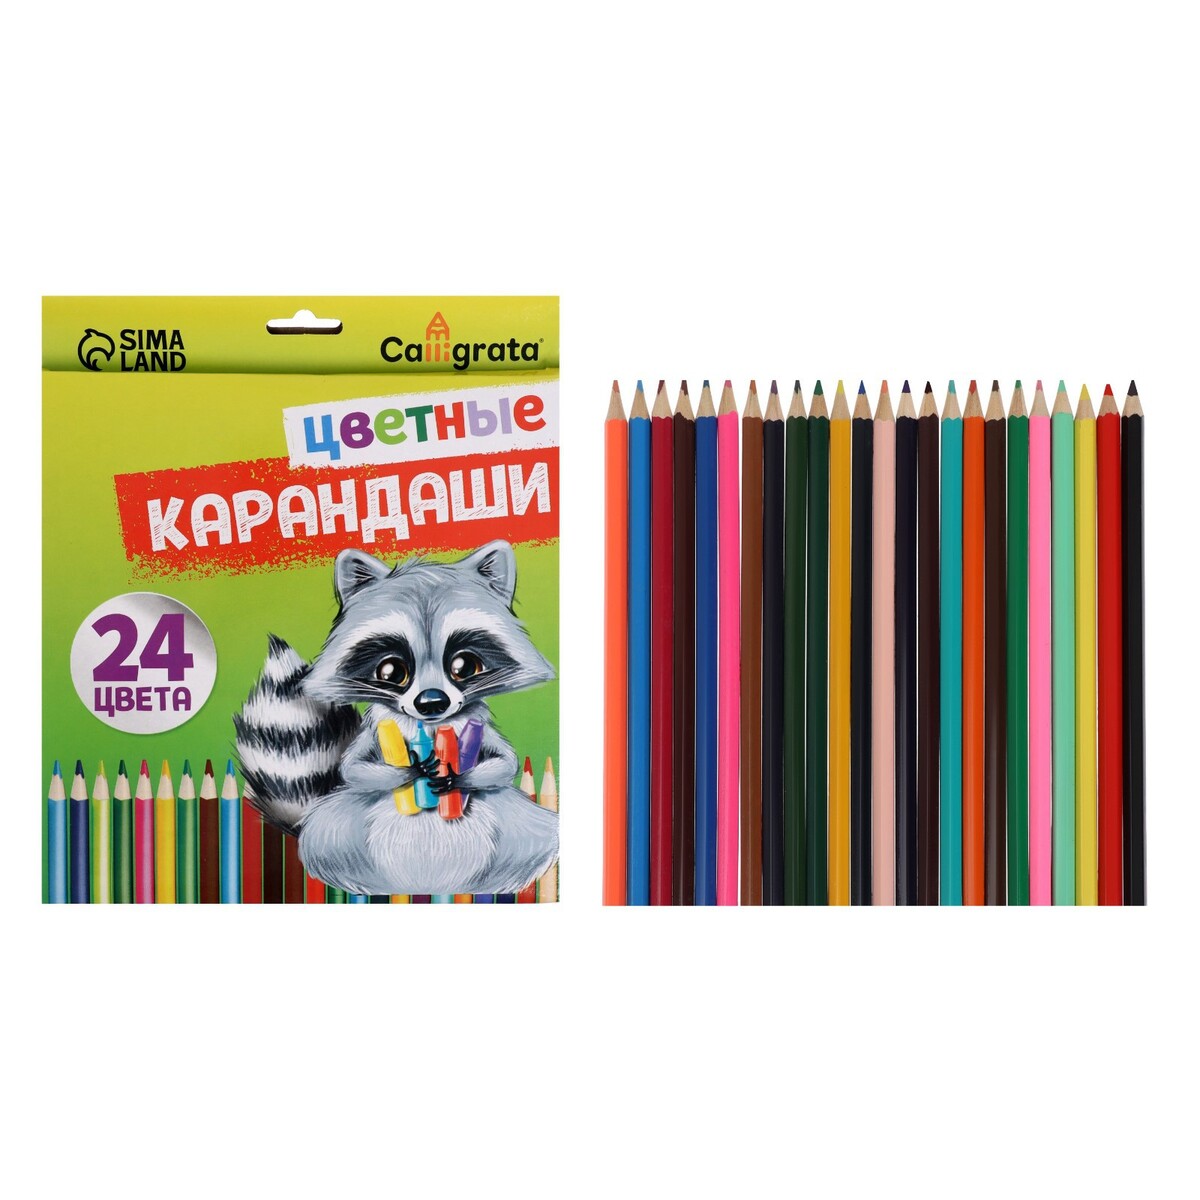 Карандаши 24 цвета, шестигранные, в картонной коробке карандаши акварельные 24 а заточенные в картонной коробке